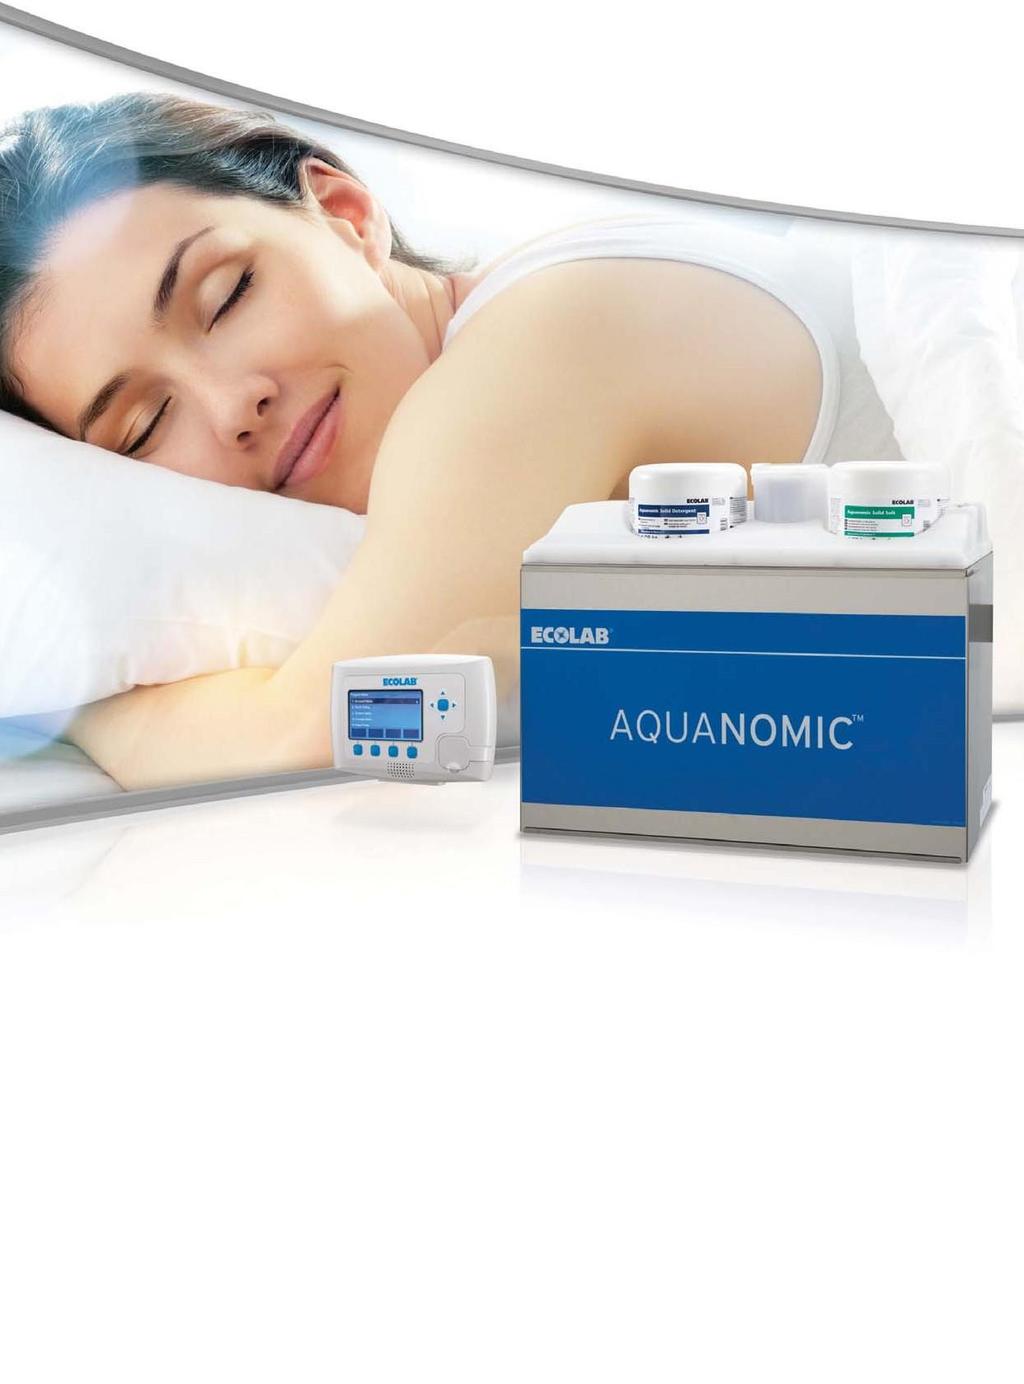 Aquanomic Waschsystem Der sichere und